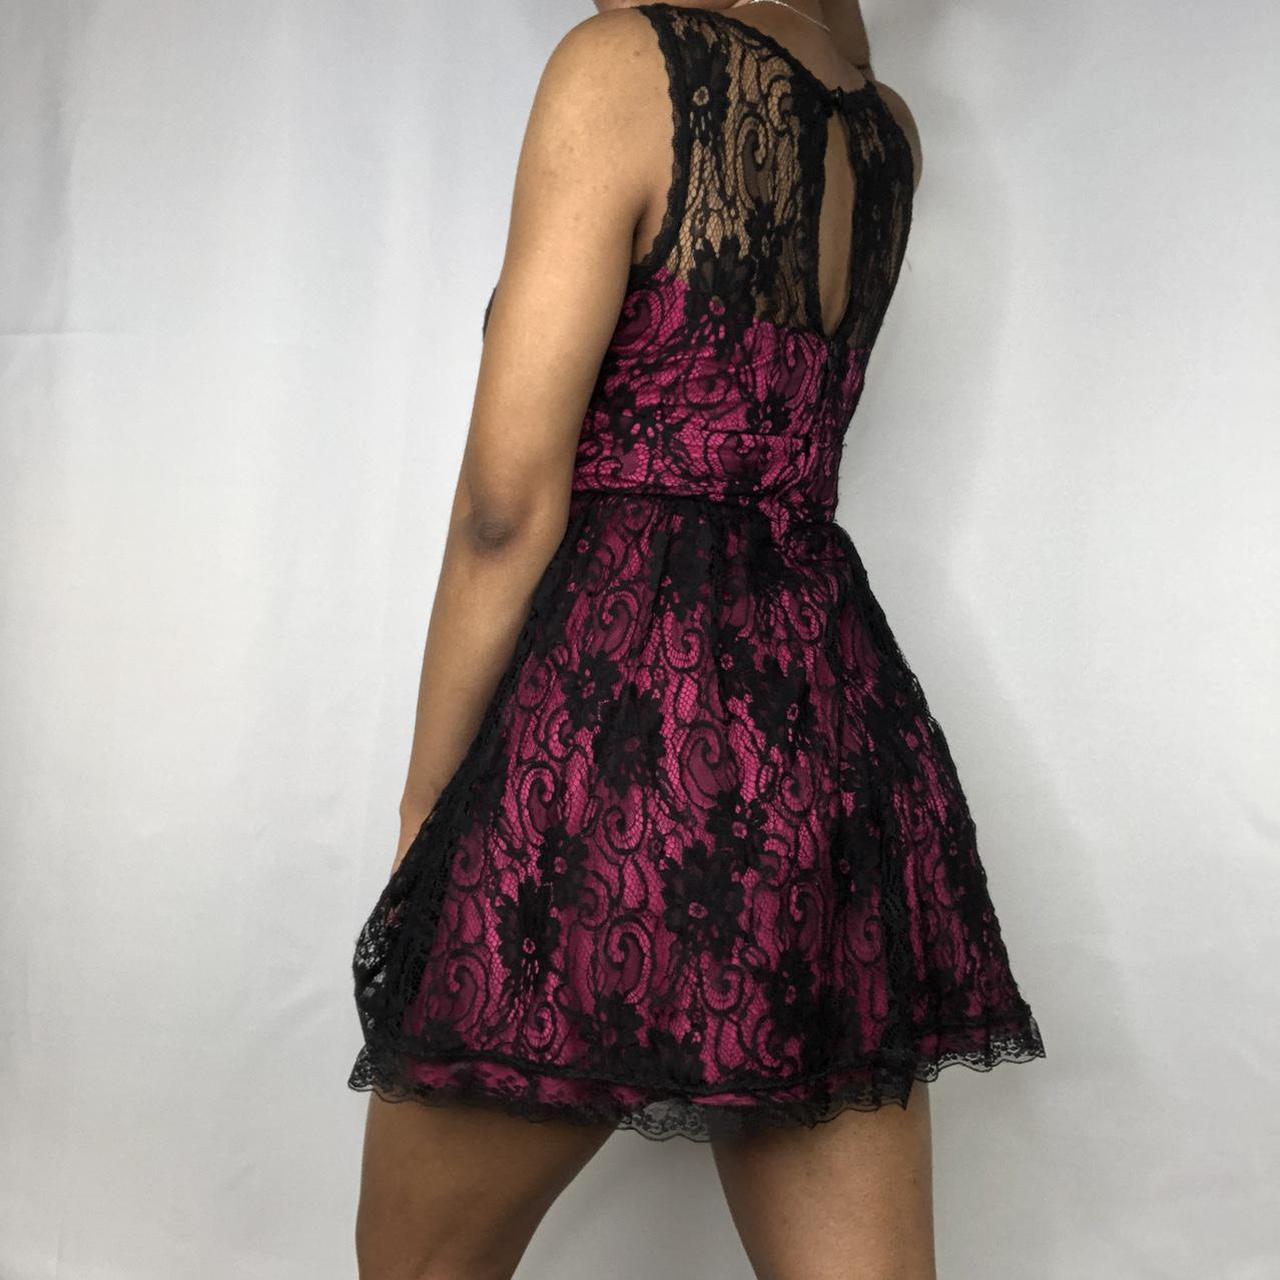 Product Image 2 - Black lace dress

Pink underlay sleeveless